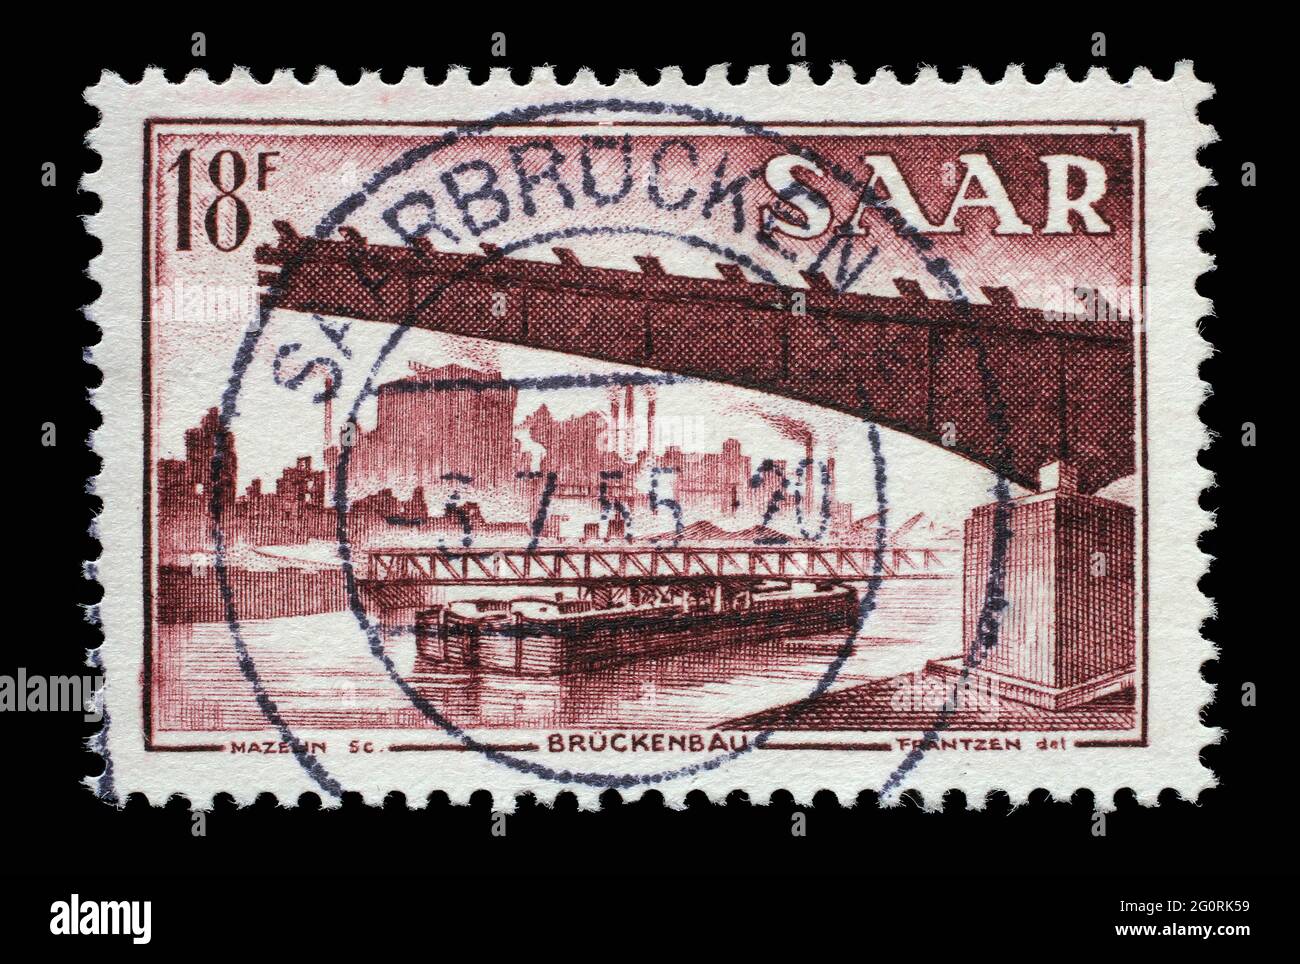 Briefmarke aus Deutschland Saar zeigt Brückenbau, Bevölkerungsumfrage, um 1955 Stockfoto